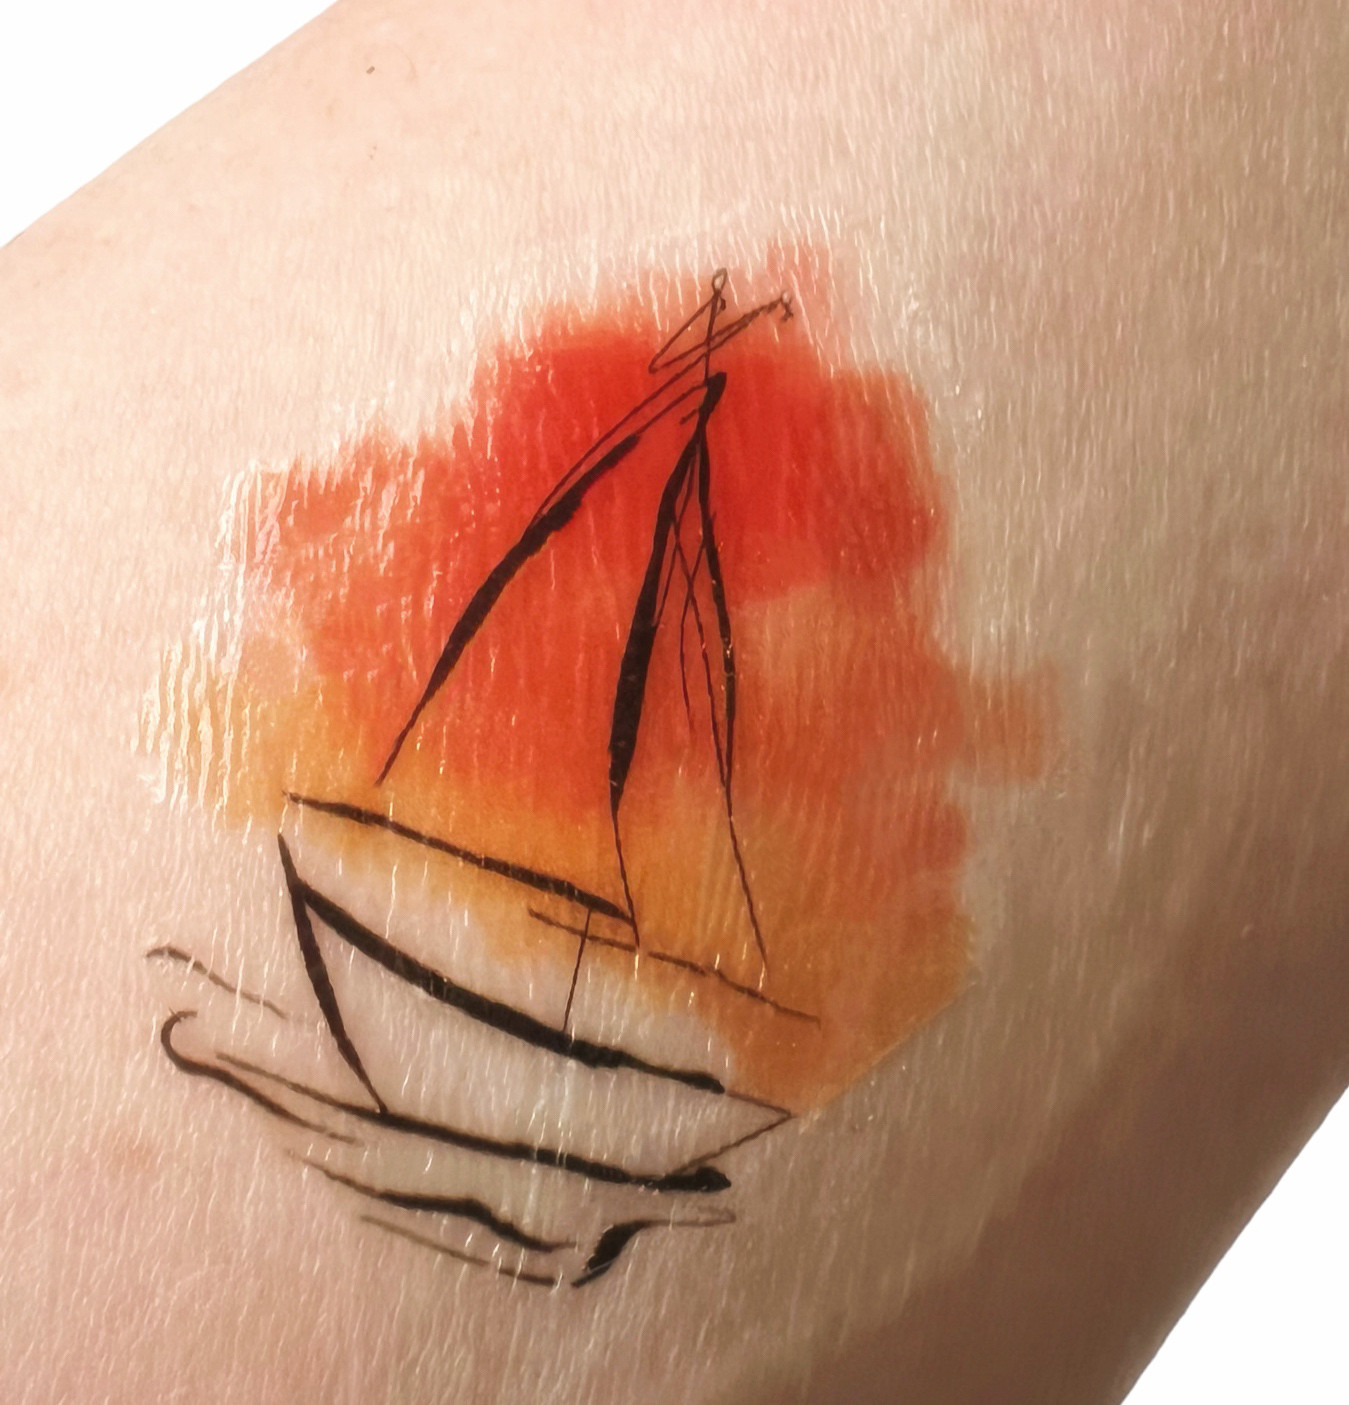 FREAKY NINE: Realistic Temporary Sticker Tattoos From Korea